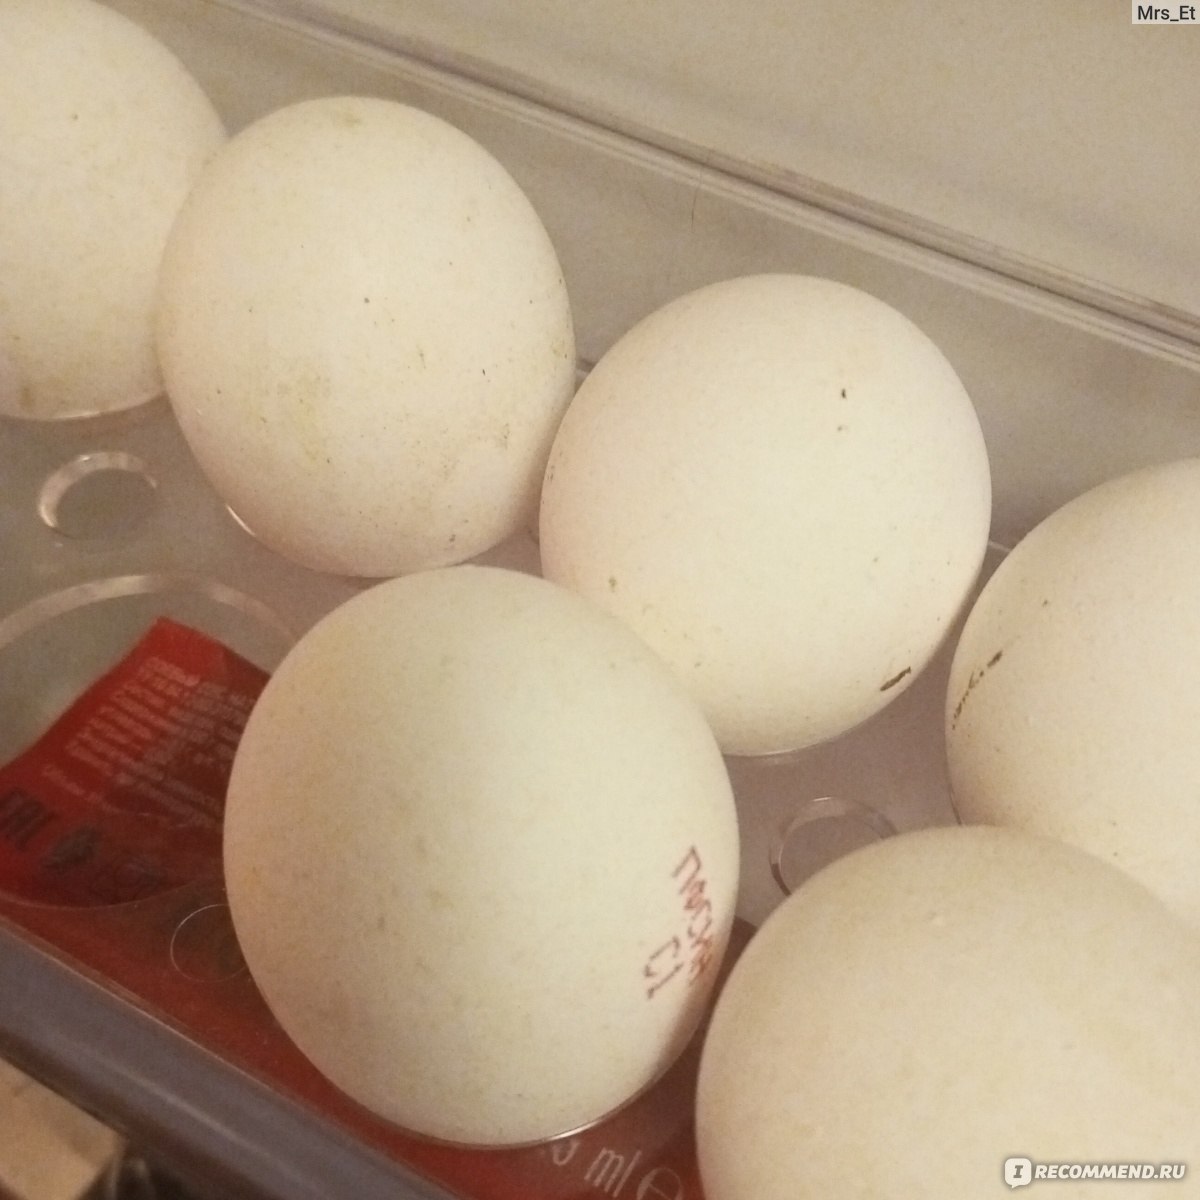 Что делать при отравлении яйцами курицы?